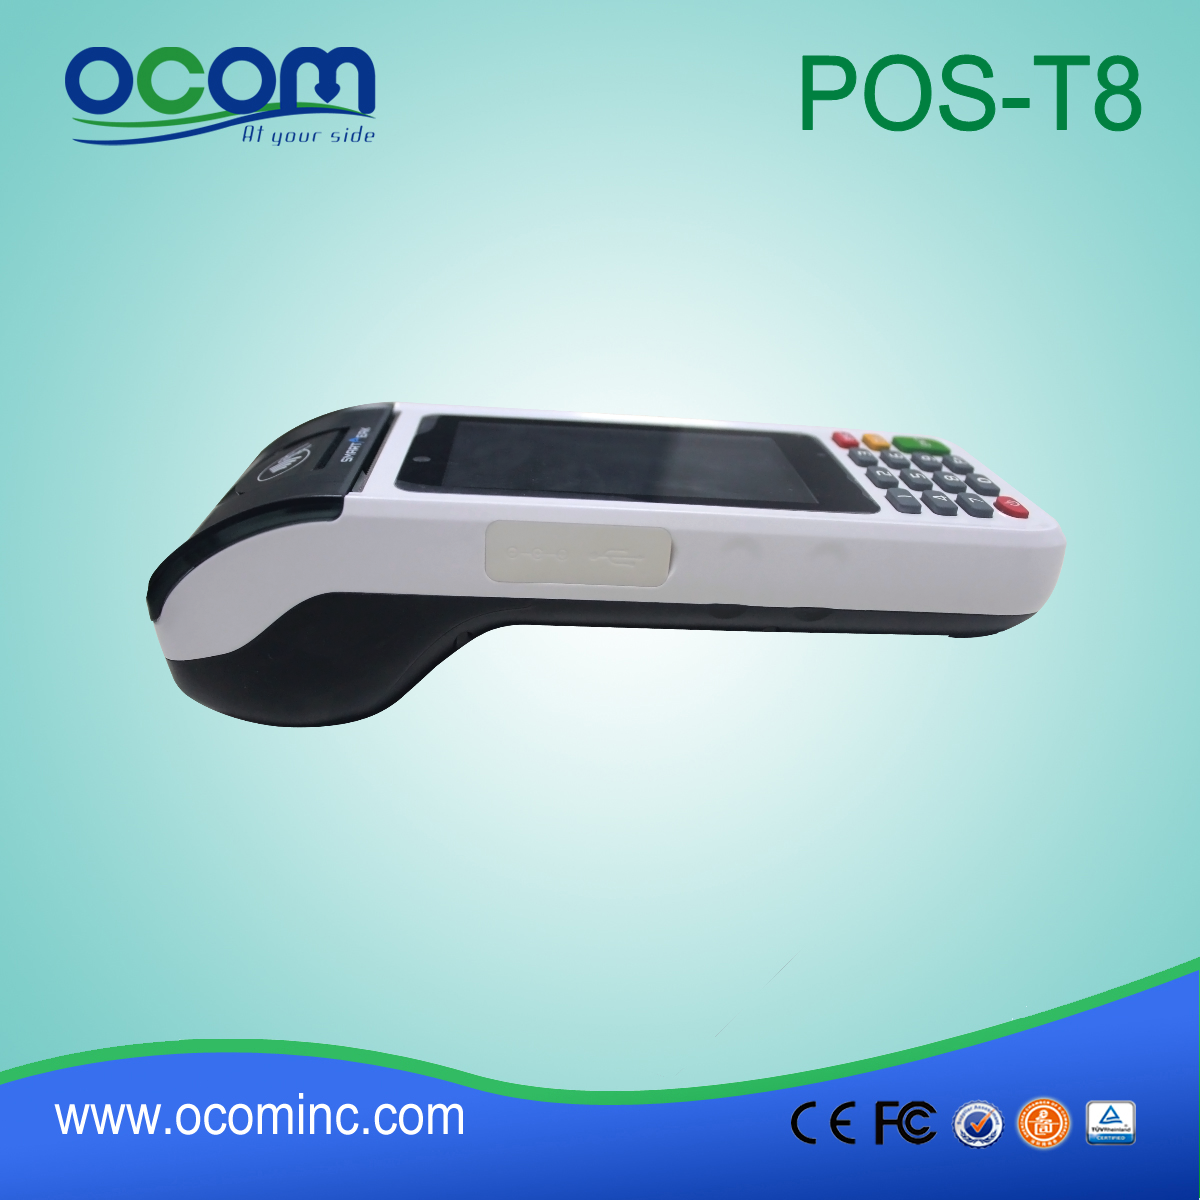 κινητό τερματικό POS με τεχνολογία NFC Reader (POS-Τ8)